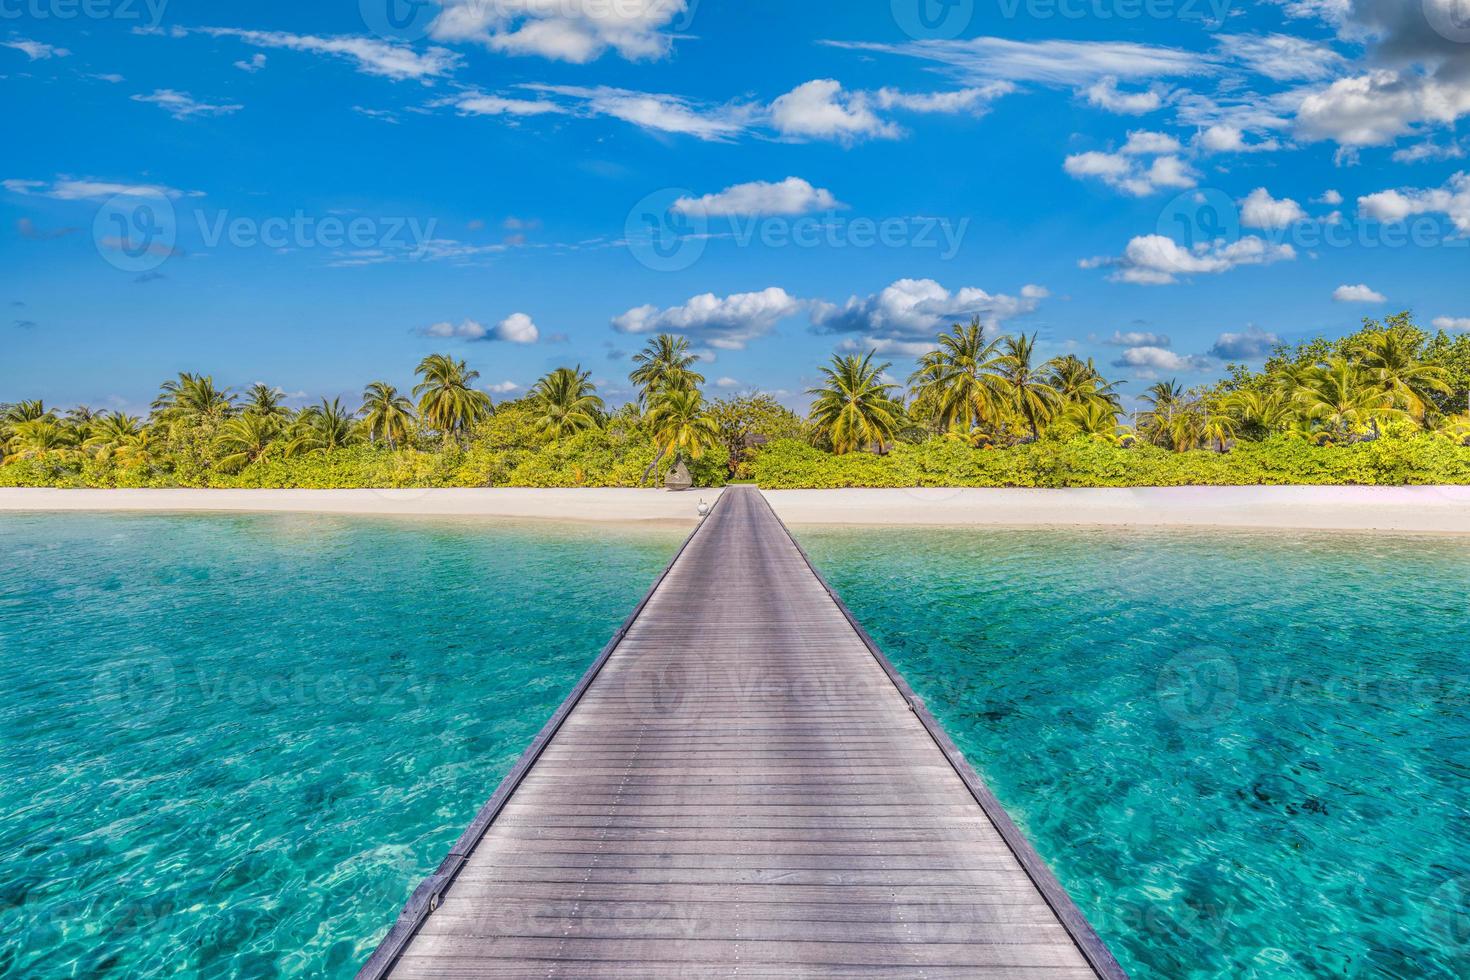 panorama incroyable aux maldives. Villas de villégiature de luxe paysage marin avec palmiers, sable blanc et ciel bleu. beau paysage d'été. fond de plage incroyable pour les vacances de vacances. concept d'île paradisiaque photo